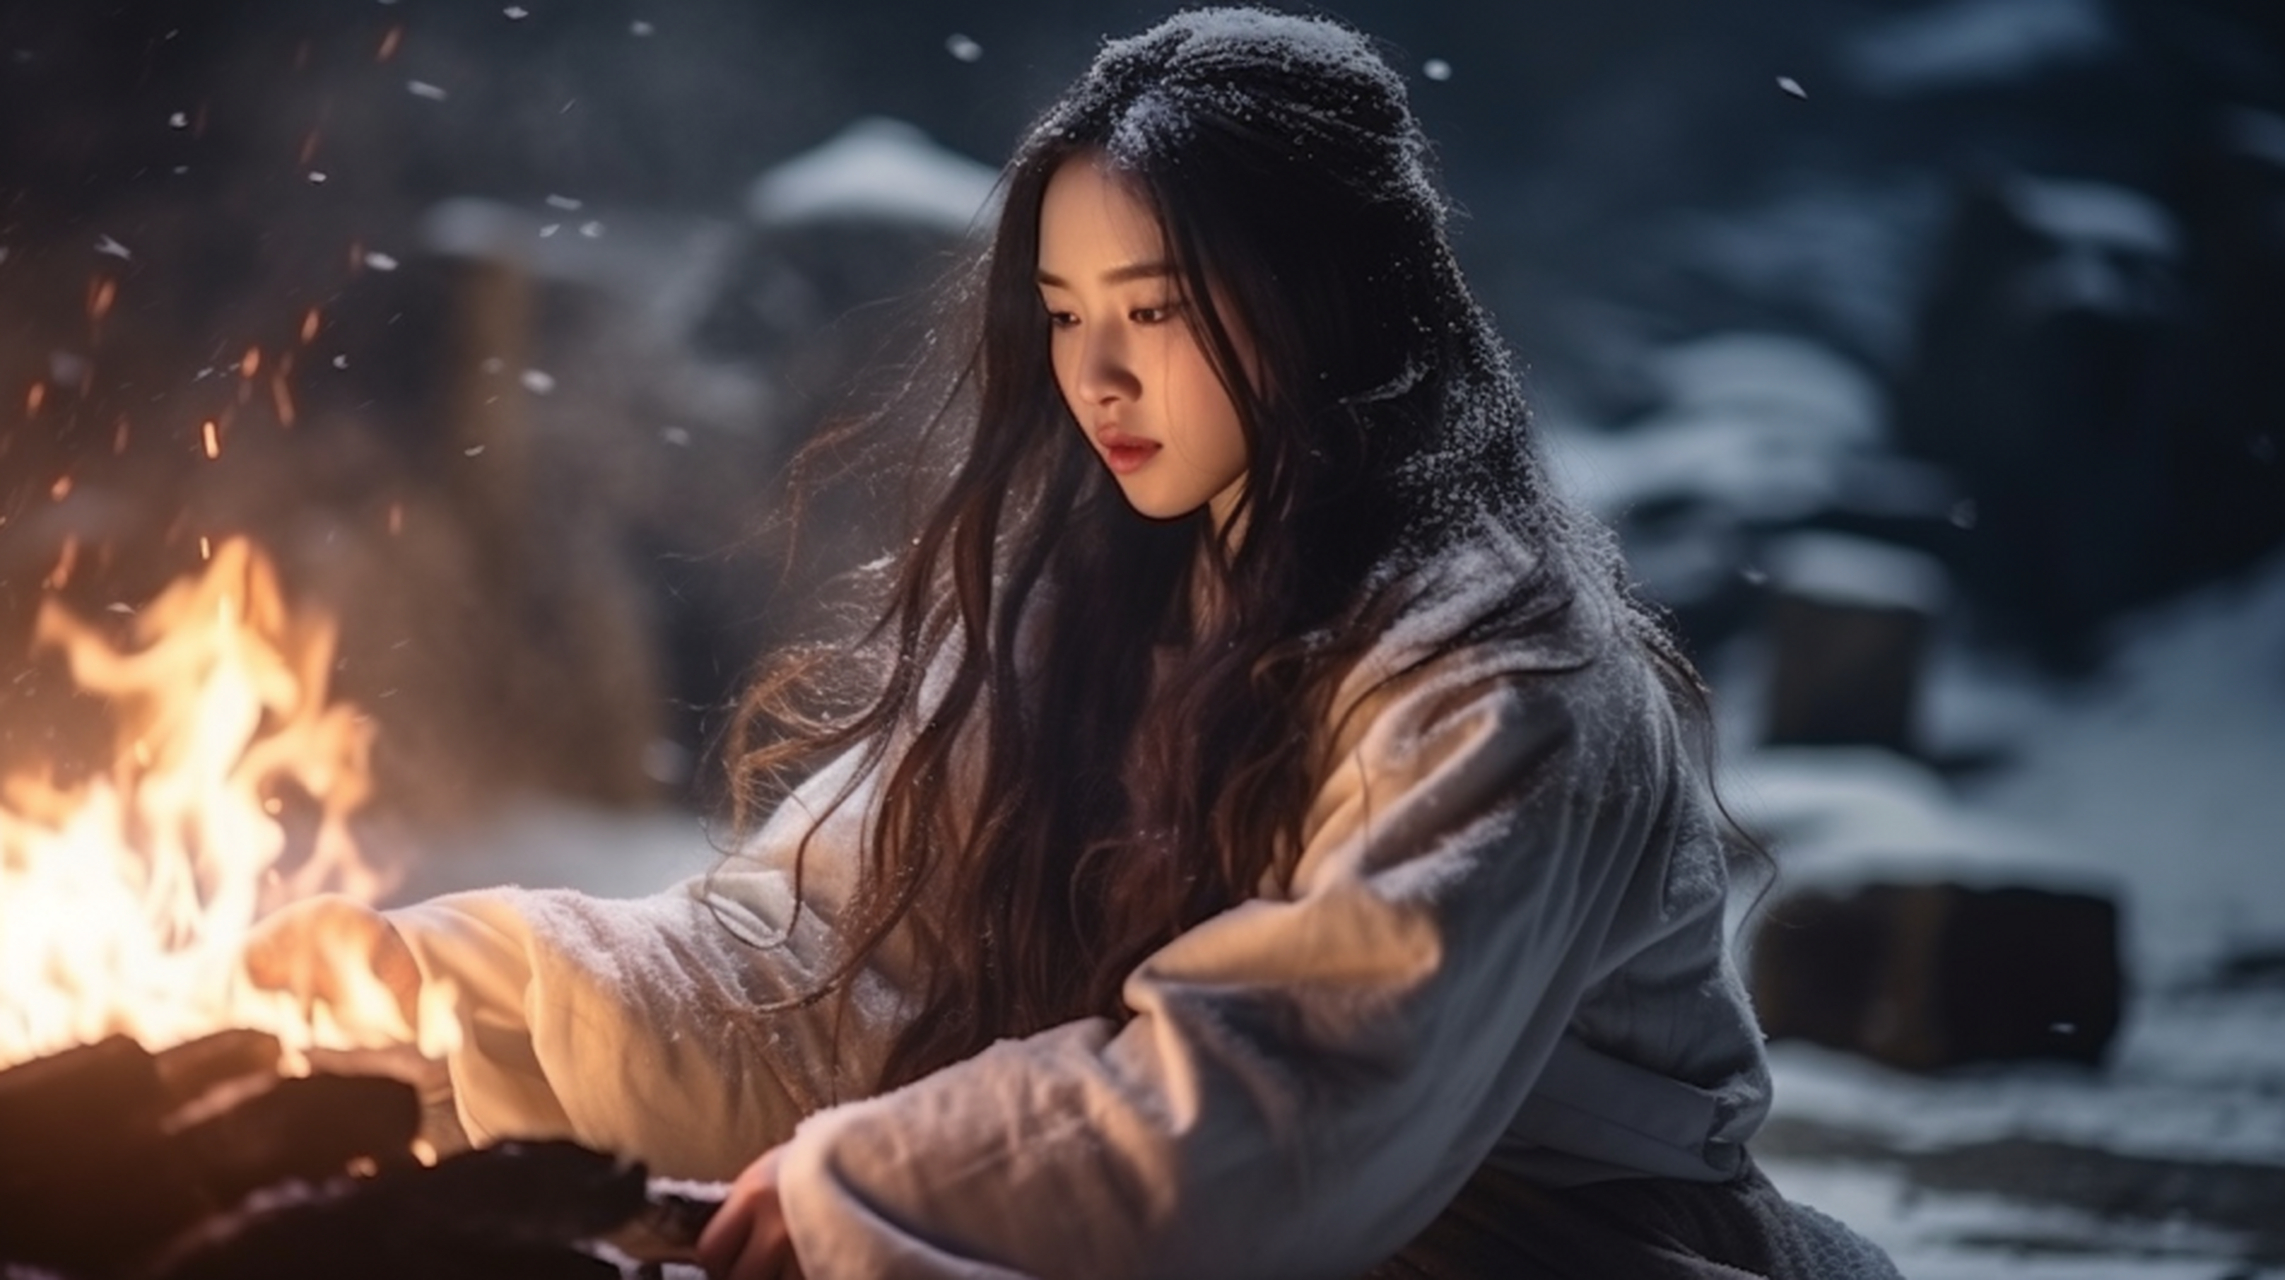 在这寂静的冬日,一个身穿古装的年轻女子坐在雪地里,面前生着一个火堆